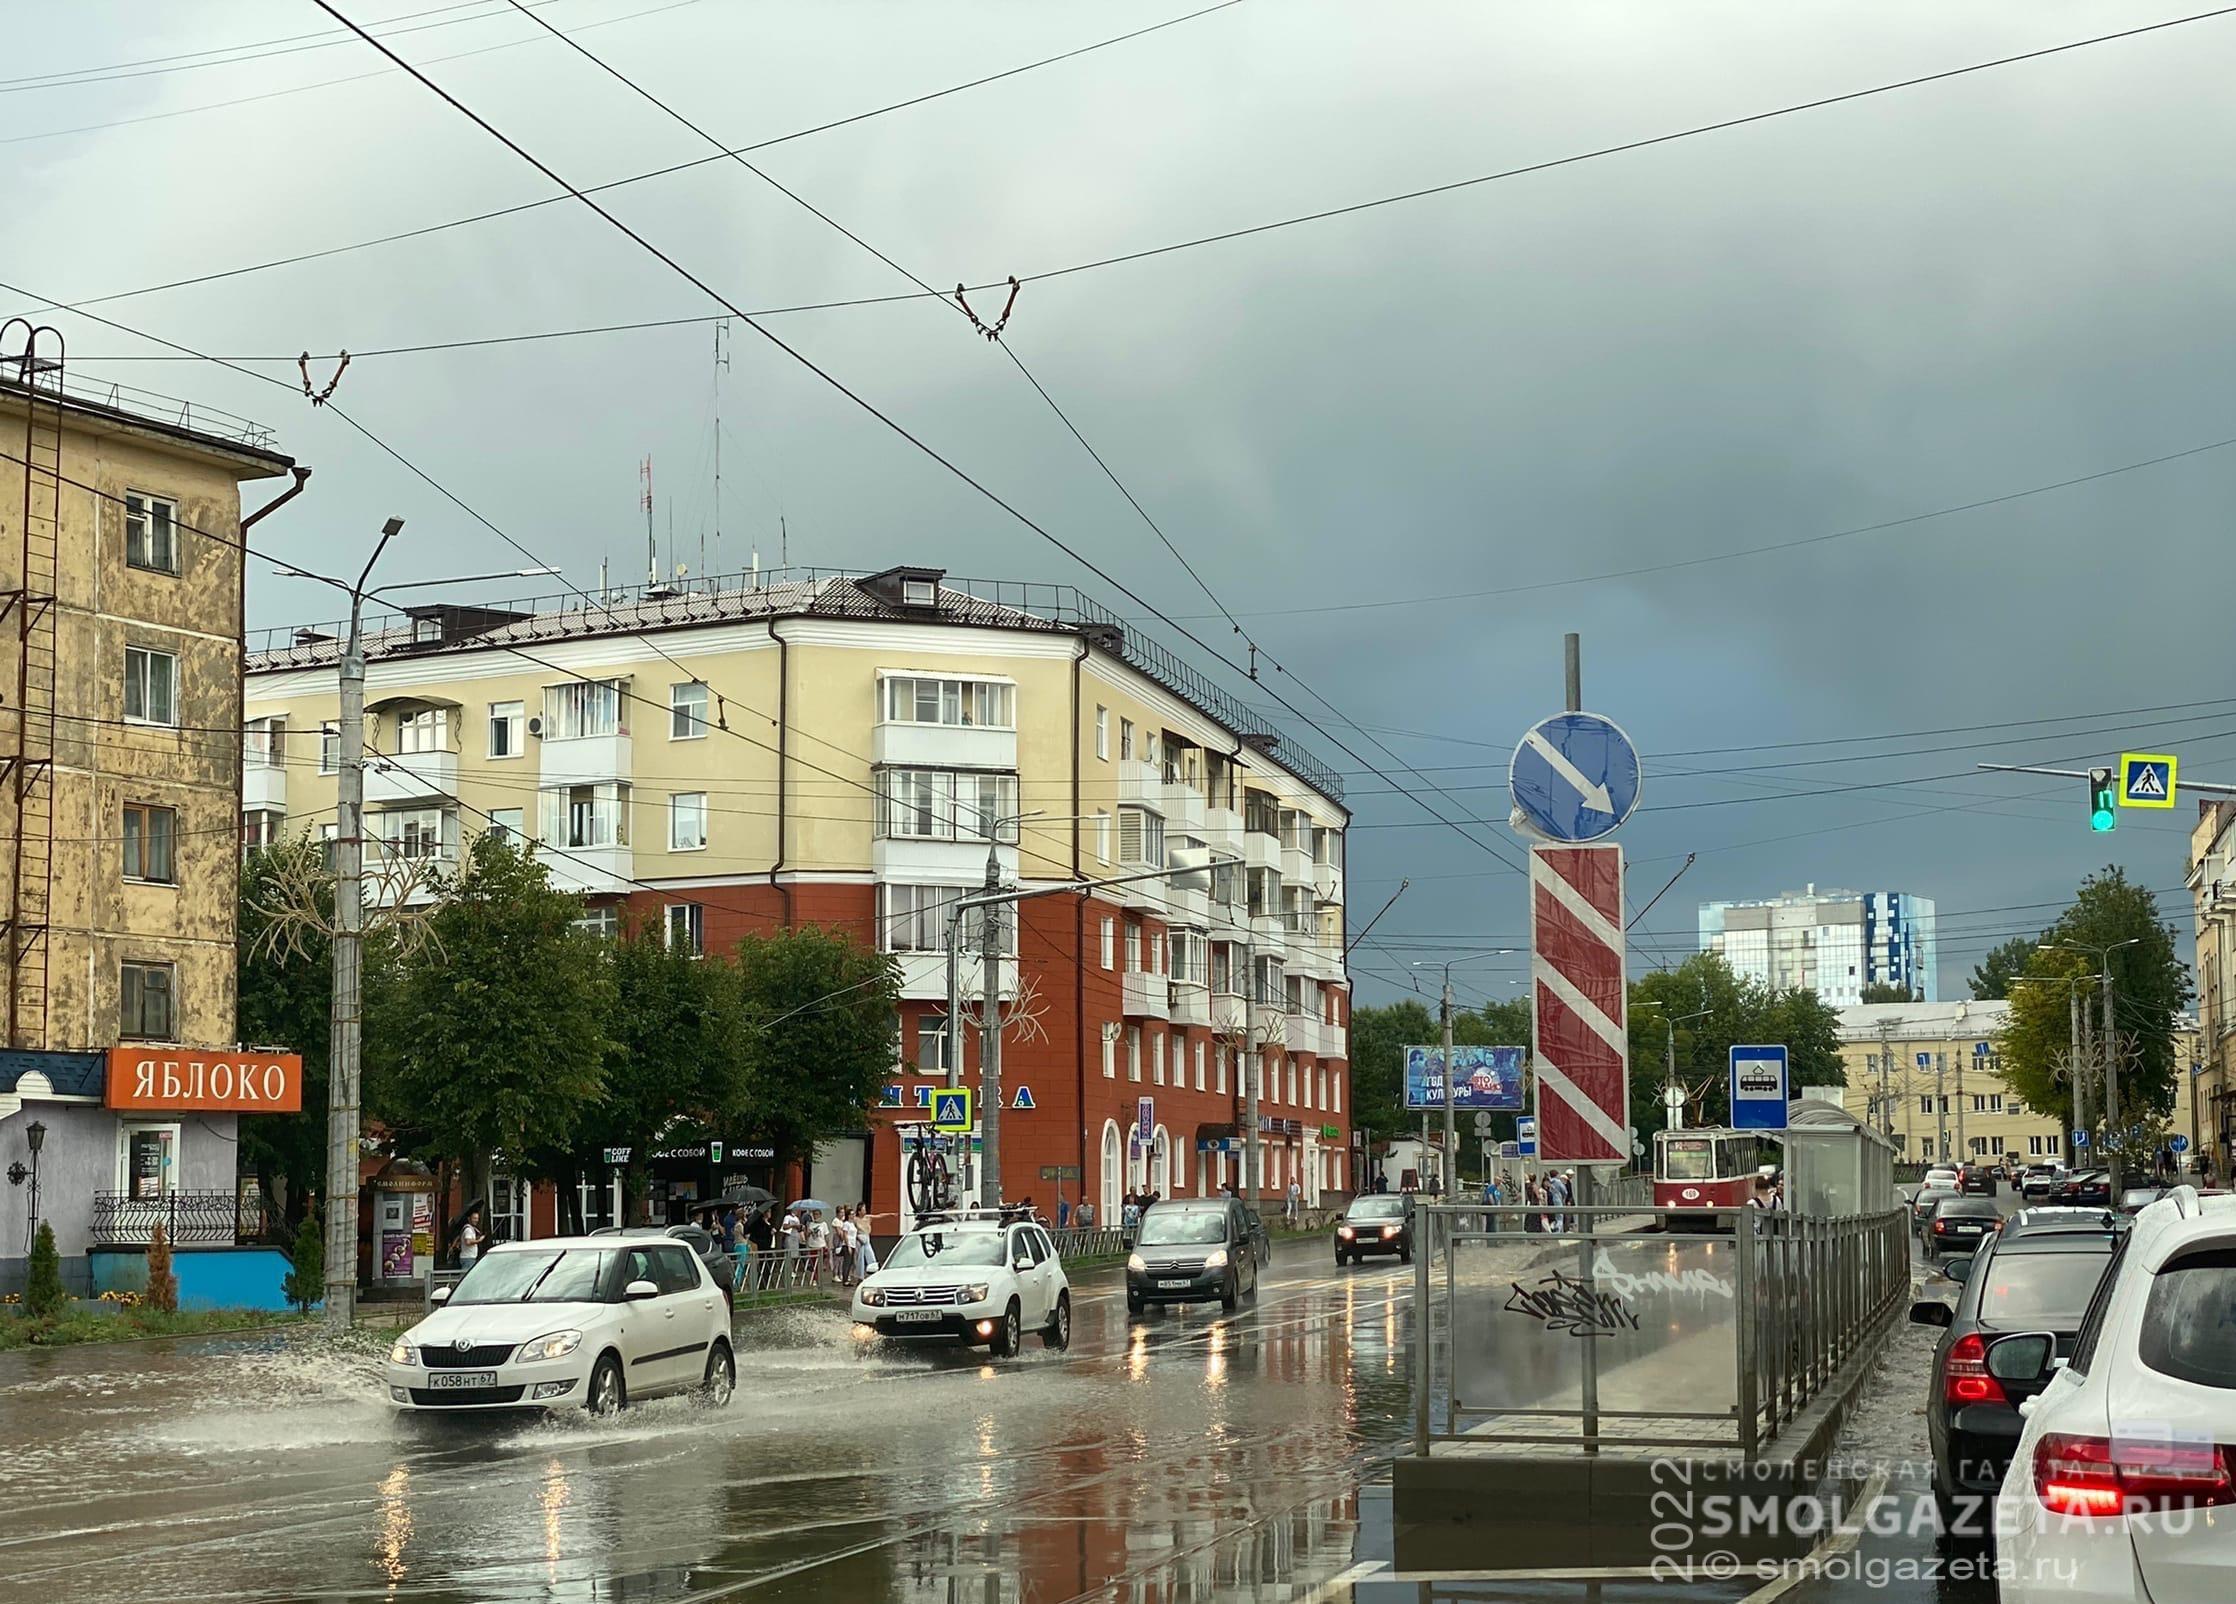 29 июня в большинстве районов Смоленской области пройдет кратковременный дождь